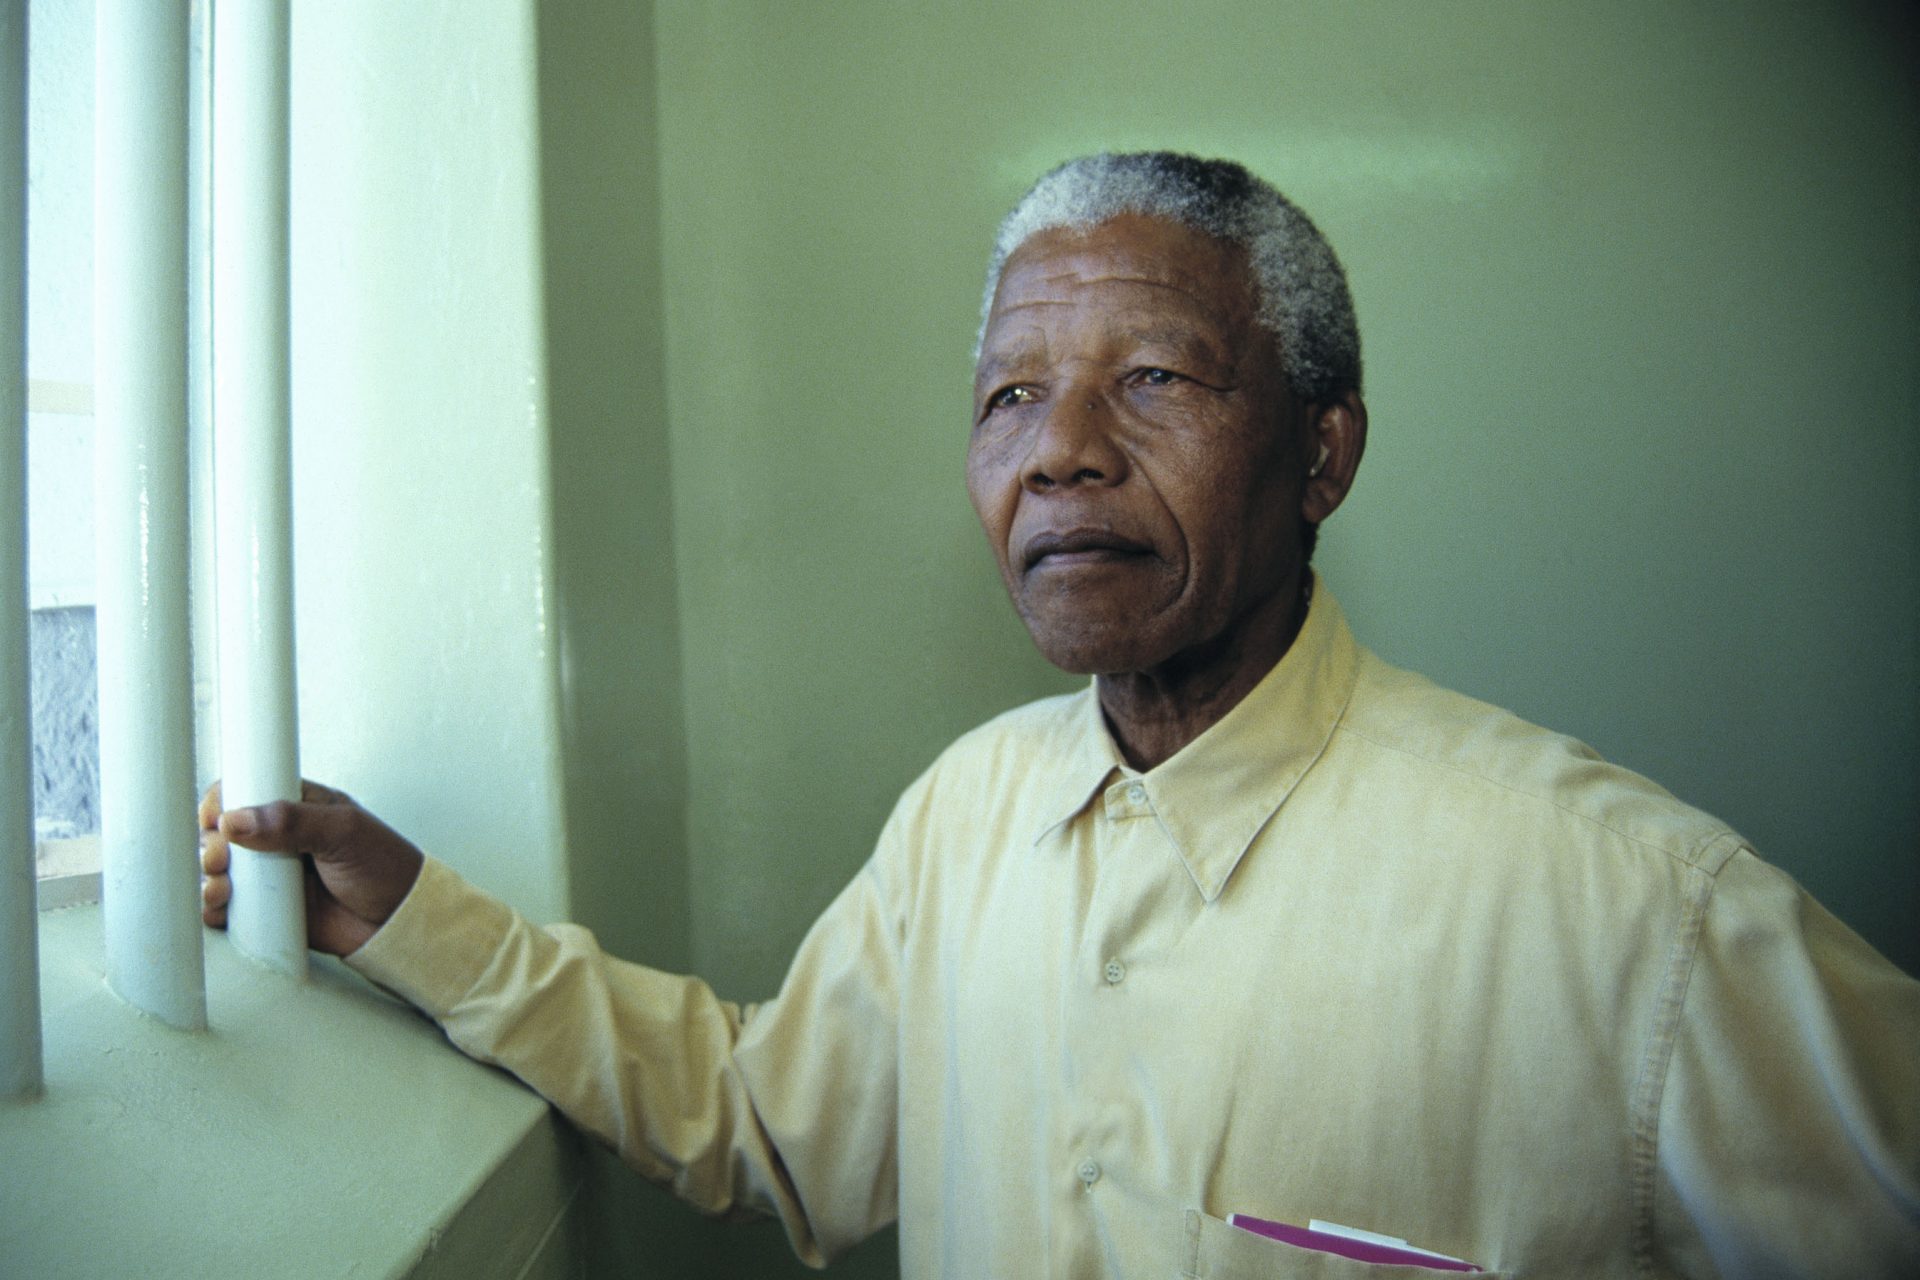 1964 - Mandela gets life